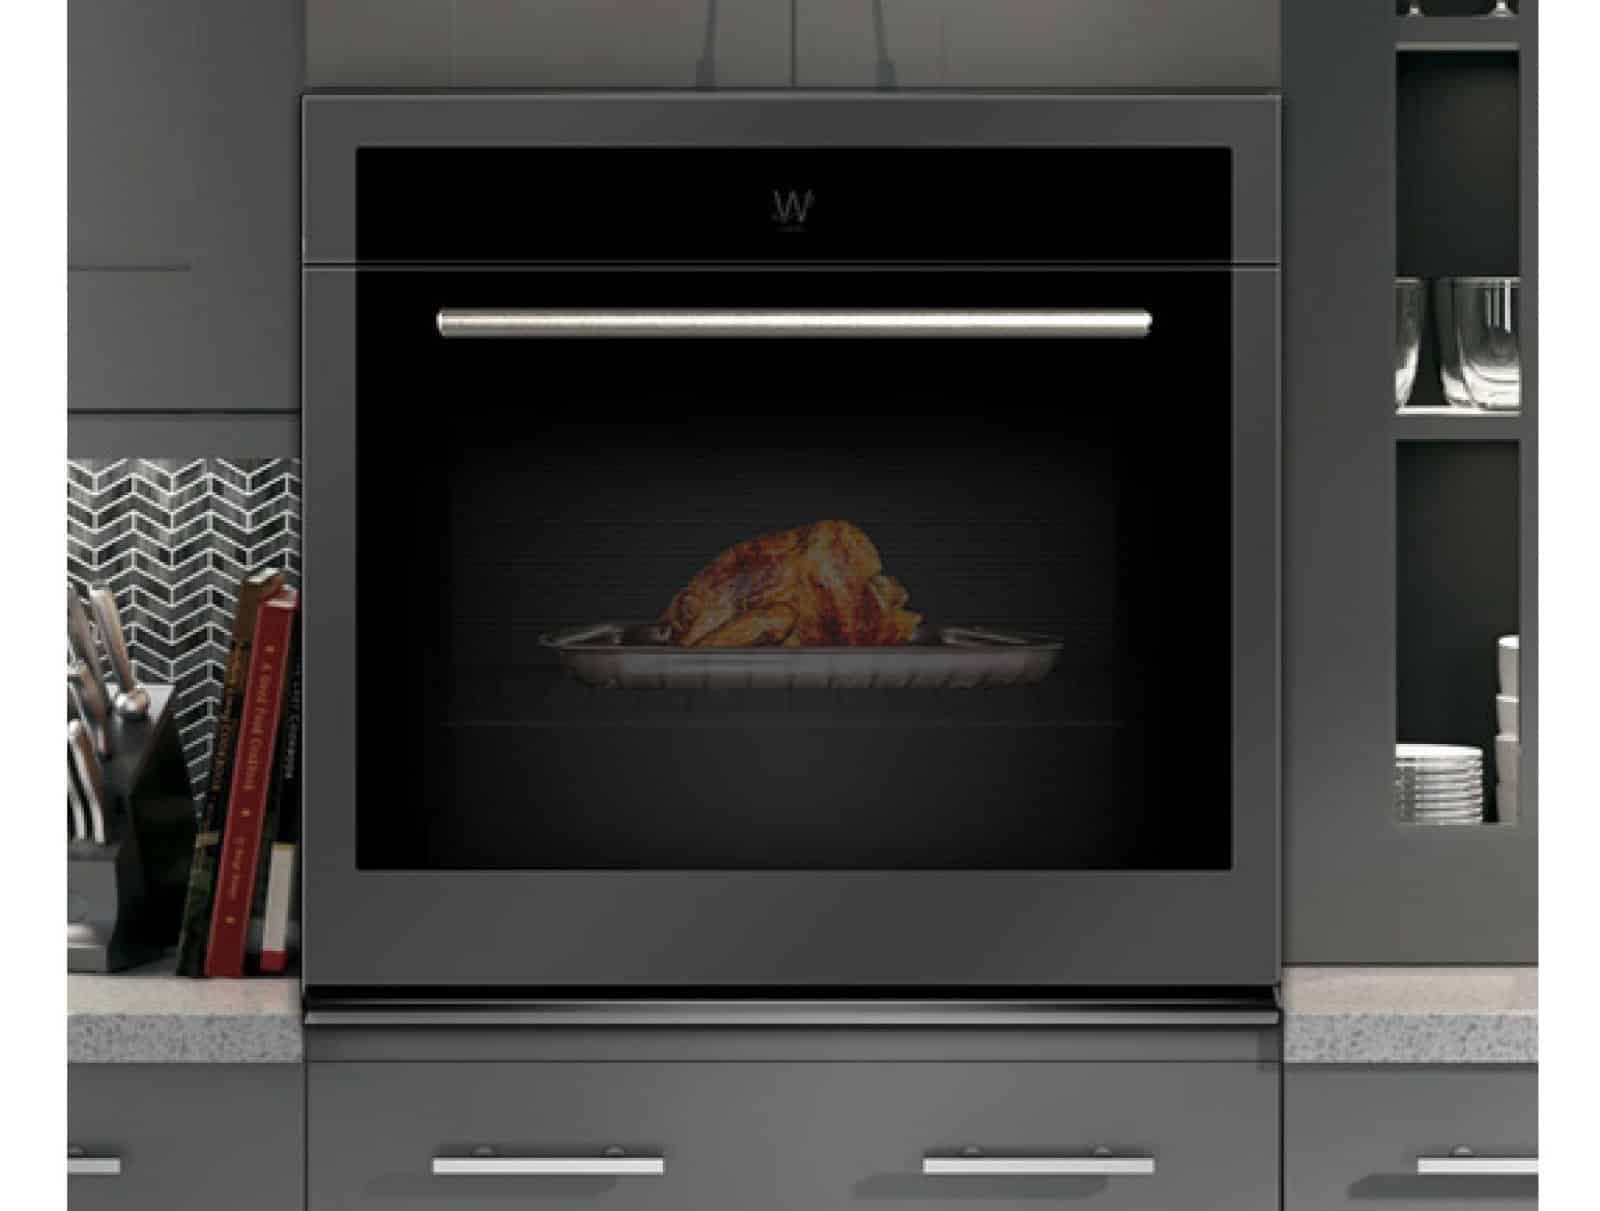 Whirlpool présente un four connecté qui utilise la réalité augmentée pour vous aider à cuisiner et vous fournit également des recettes de cuisine